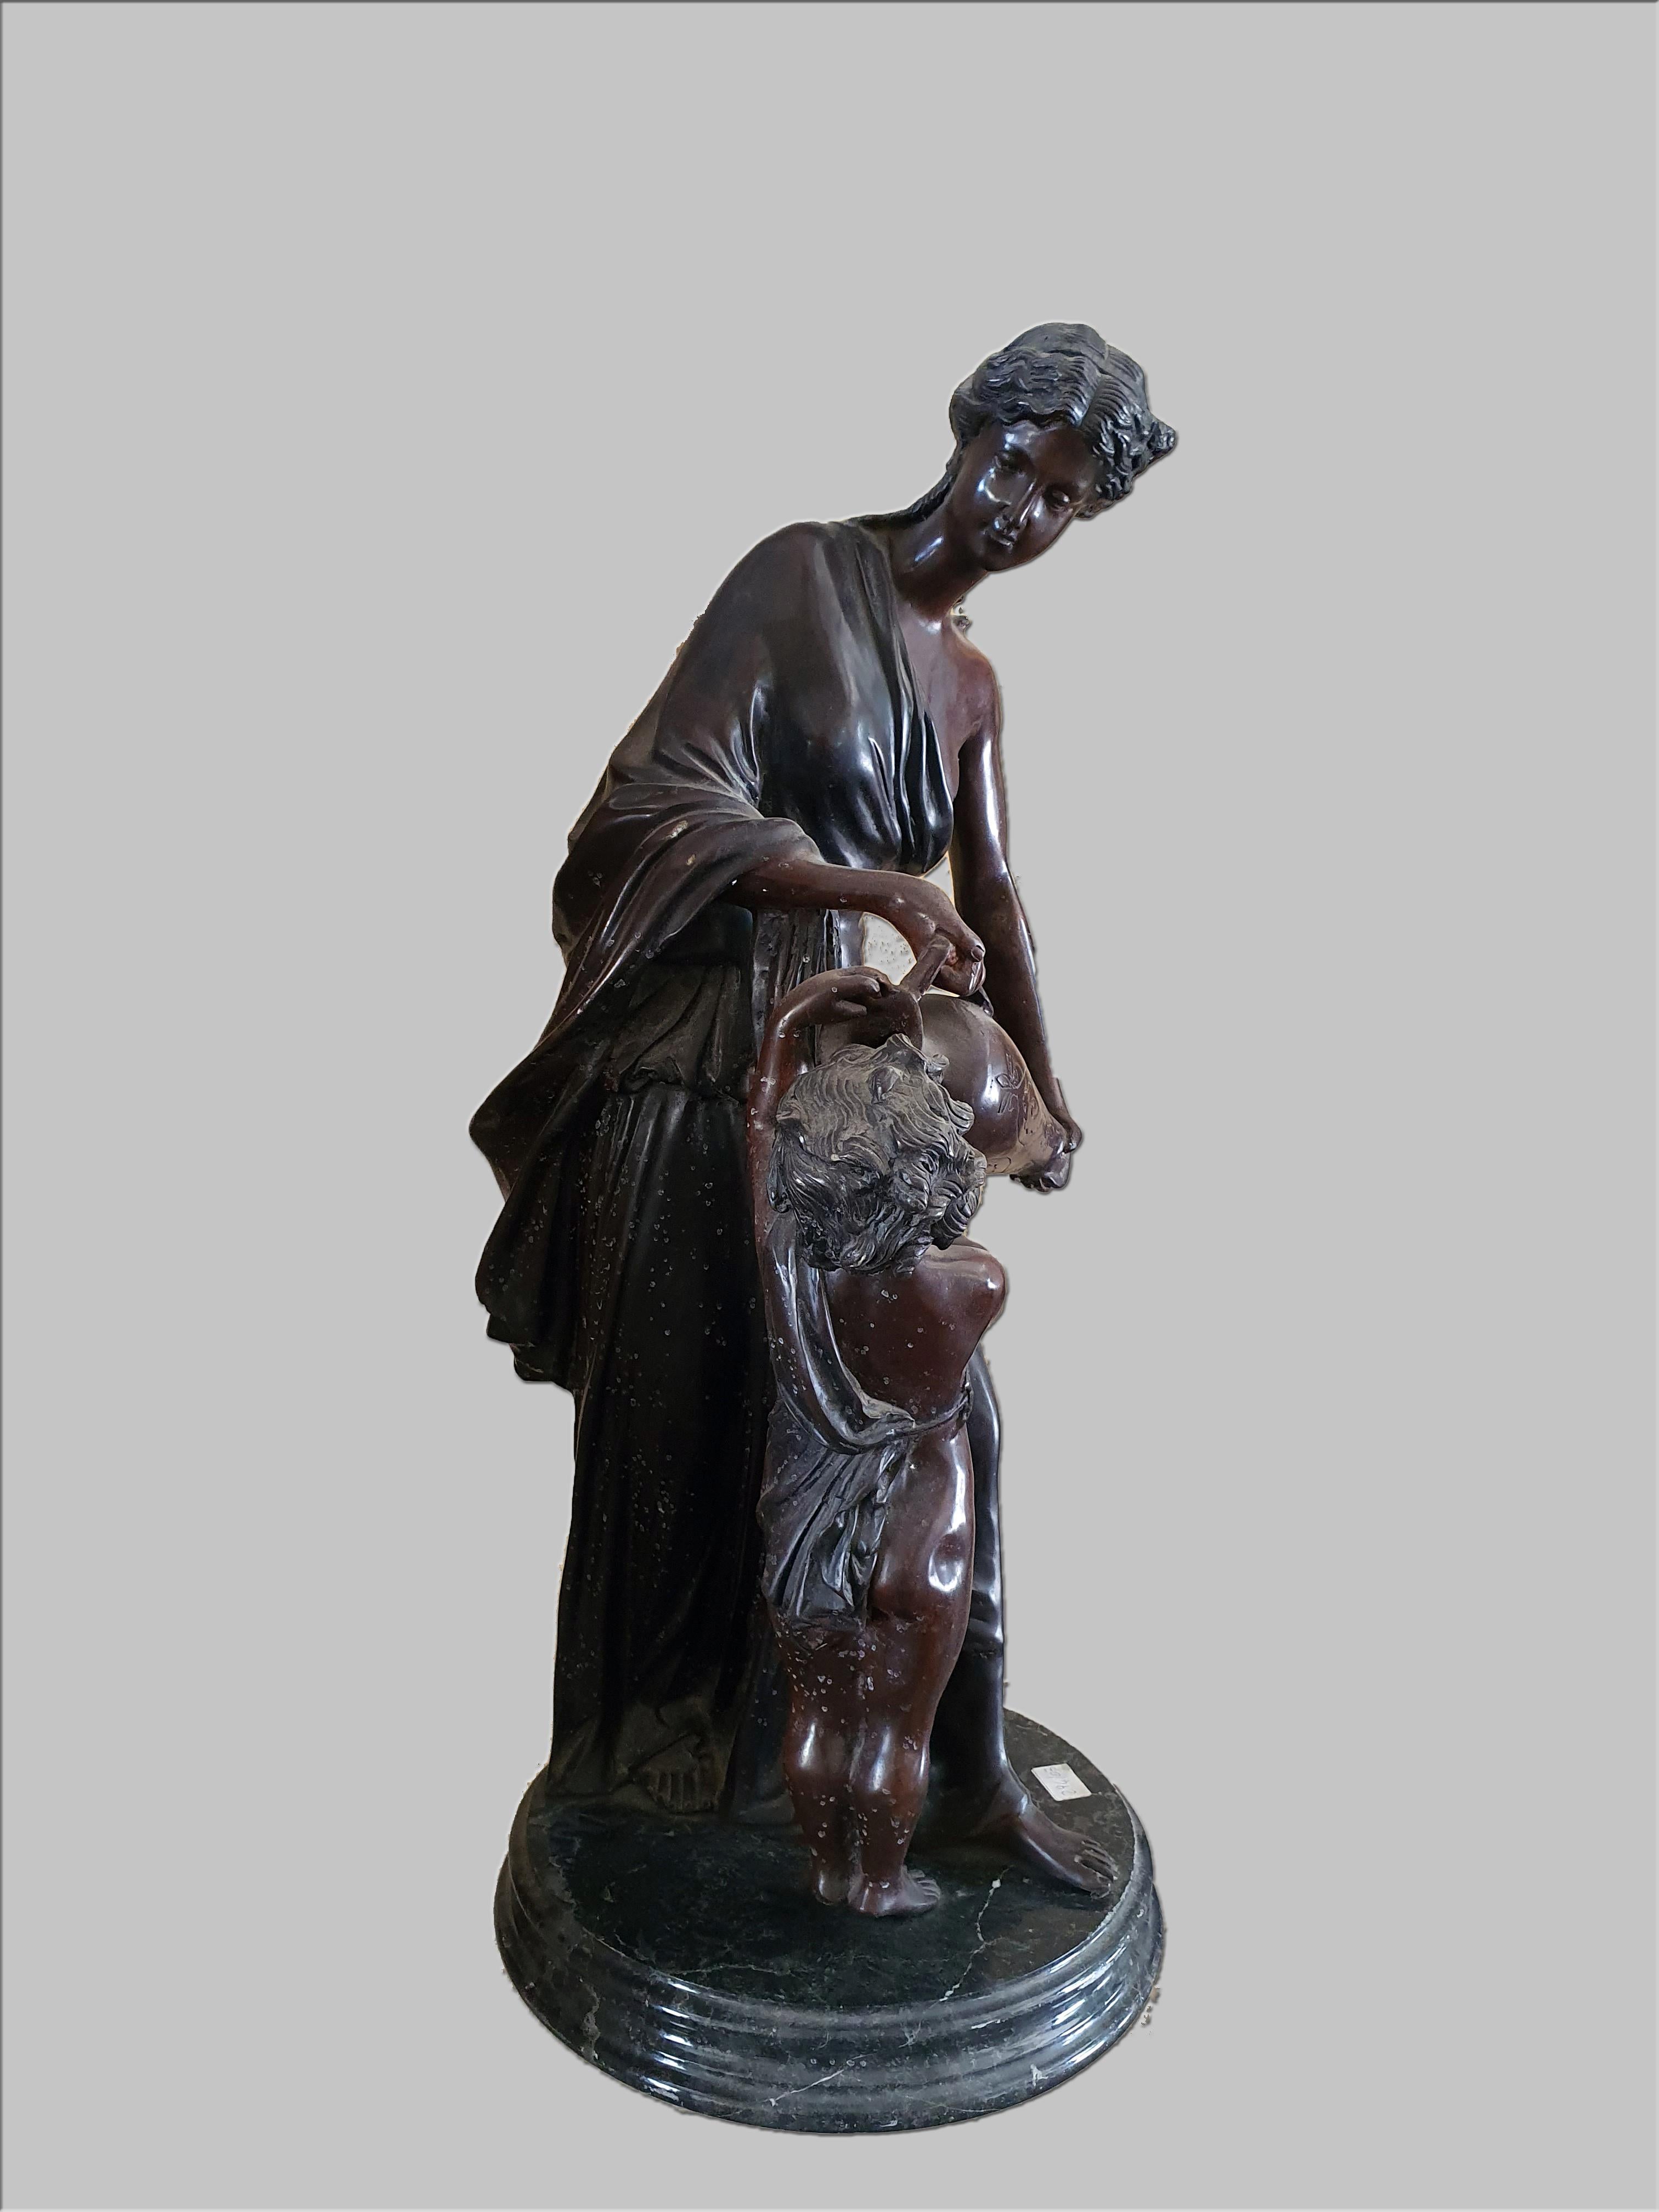 Sculpture en bronze patiné représentant une dame avec un verseur à la main et un enfant. Base en marbre.
Réalisé par Hippolyte François Moreau.